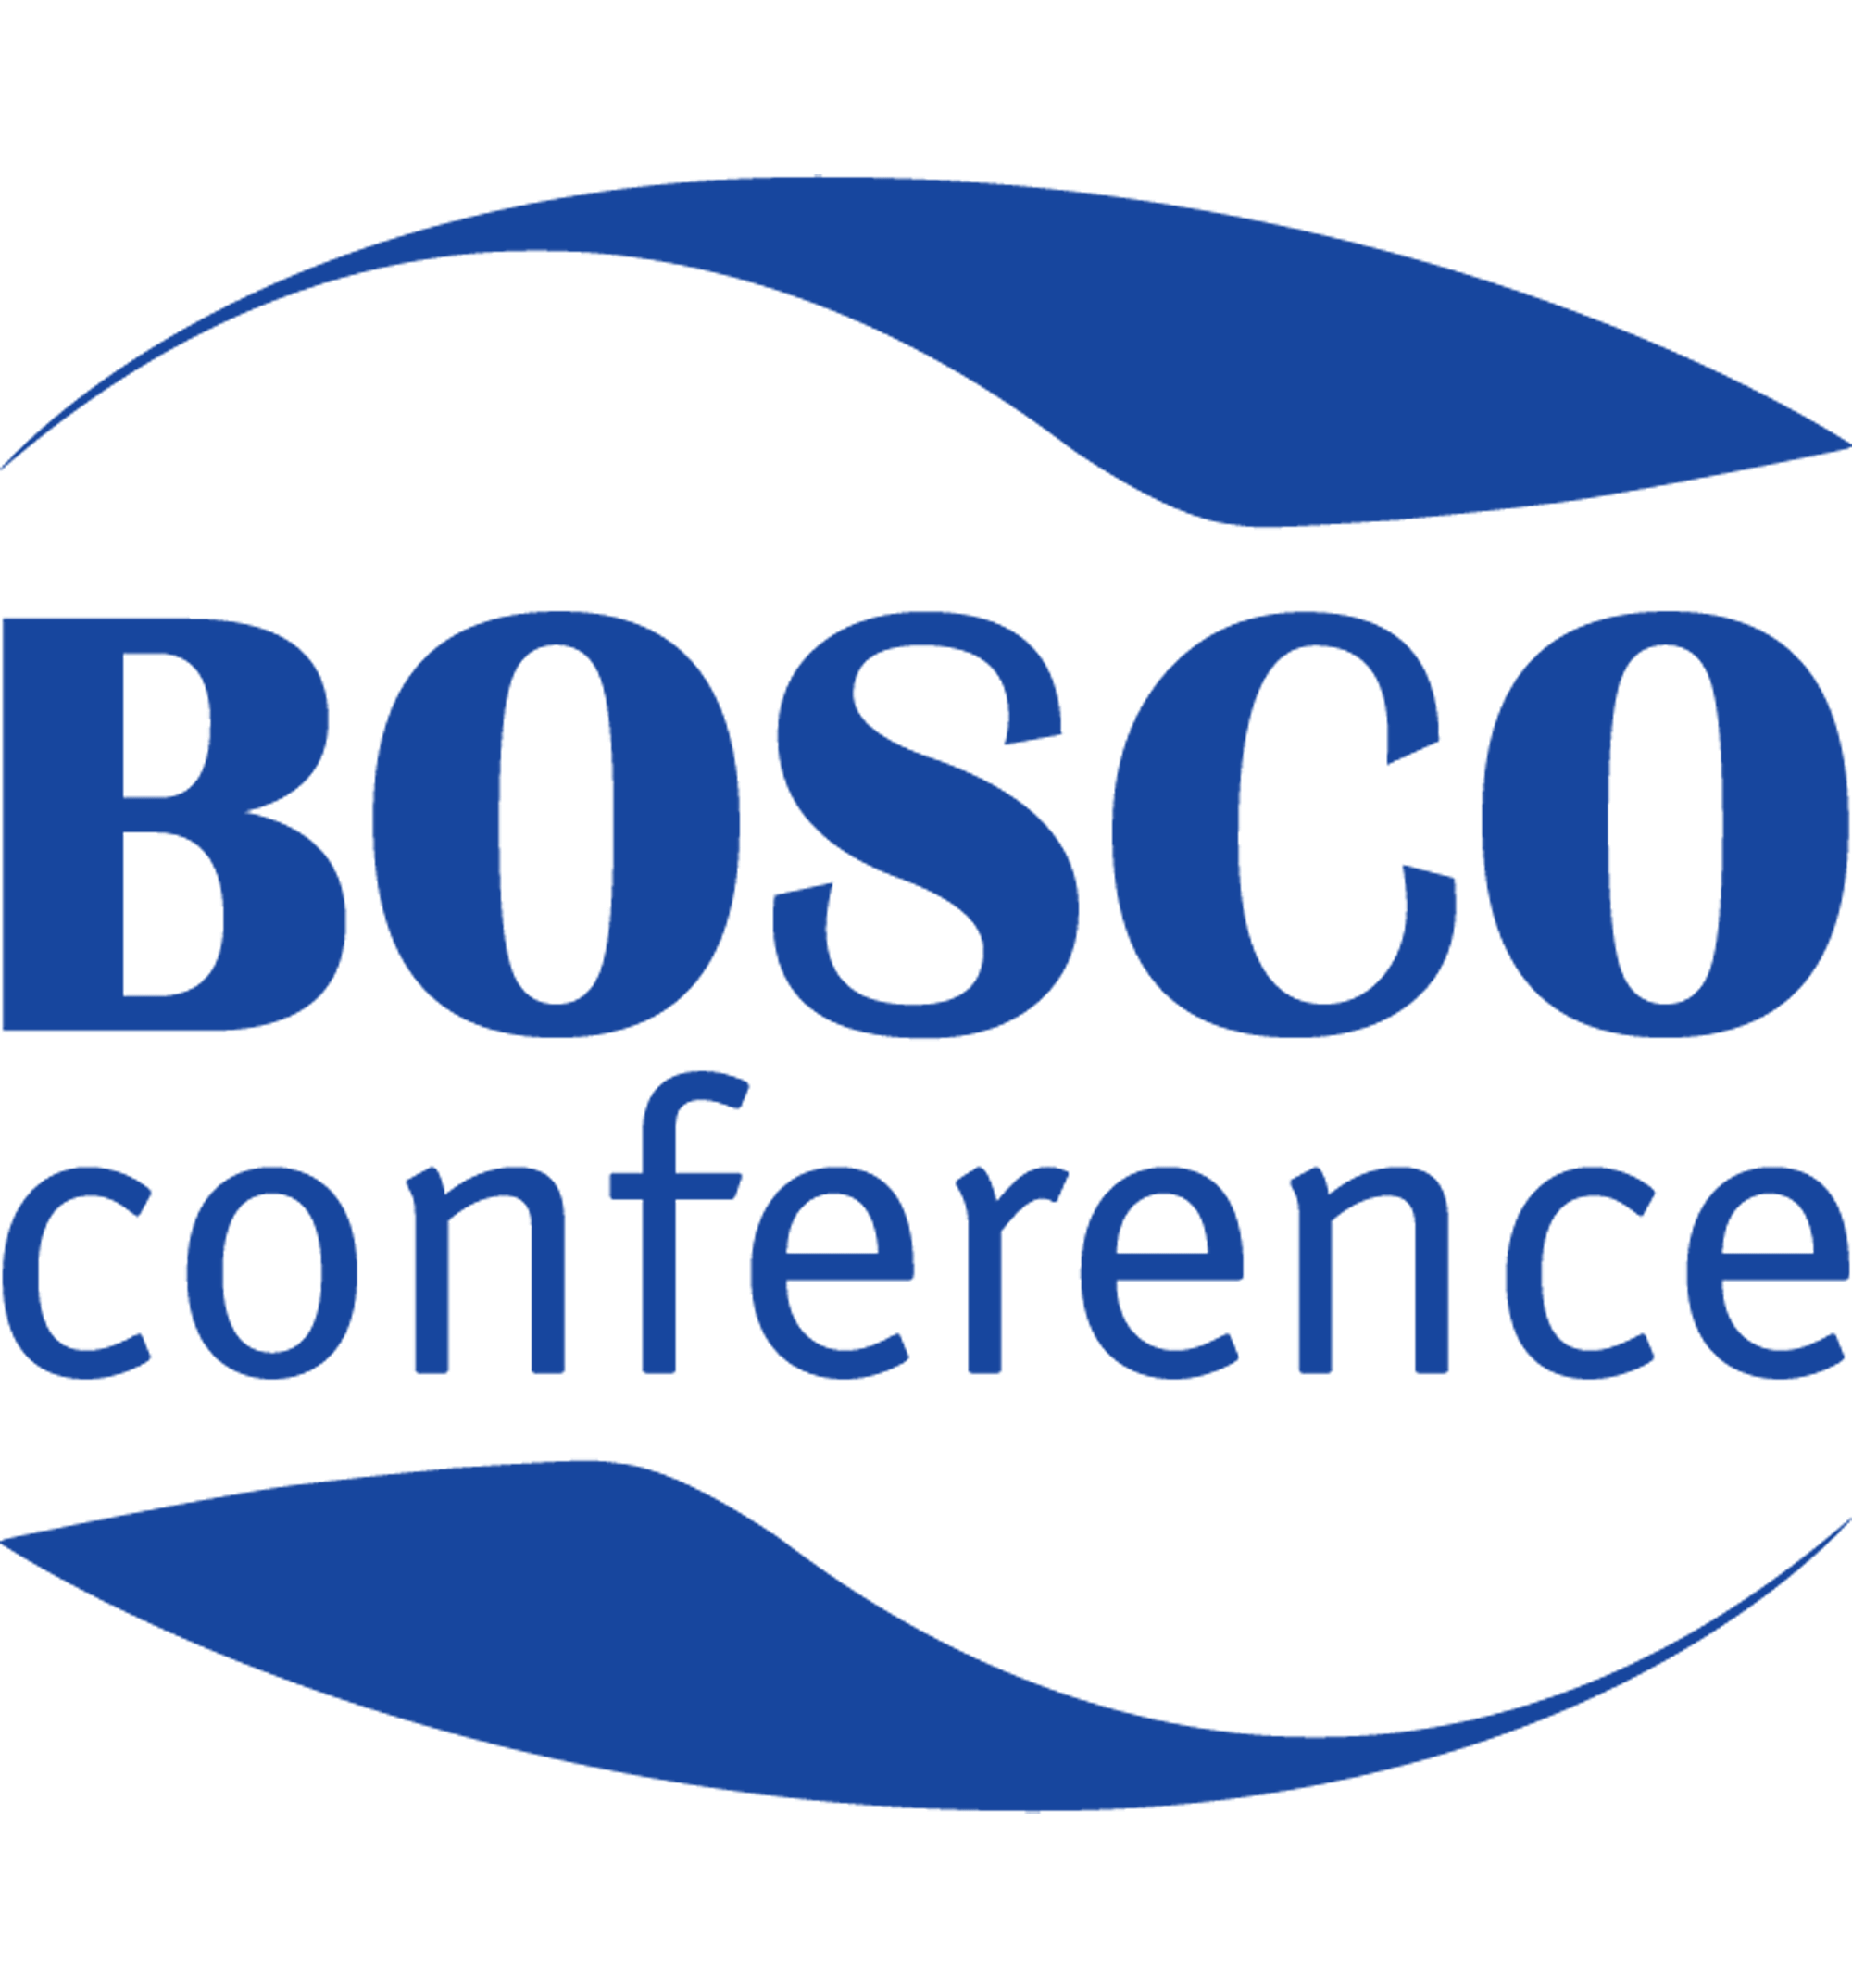 Bosco conference logo, logotype